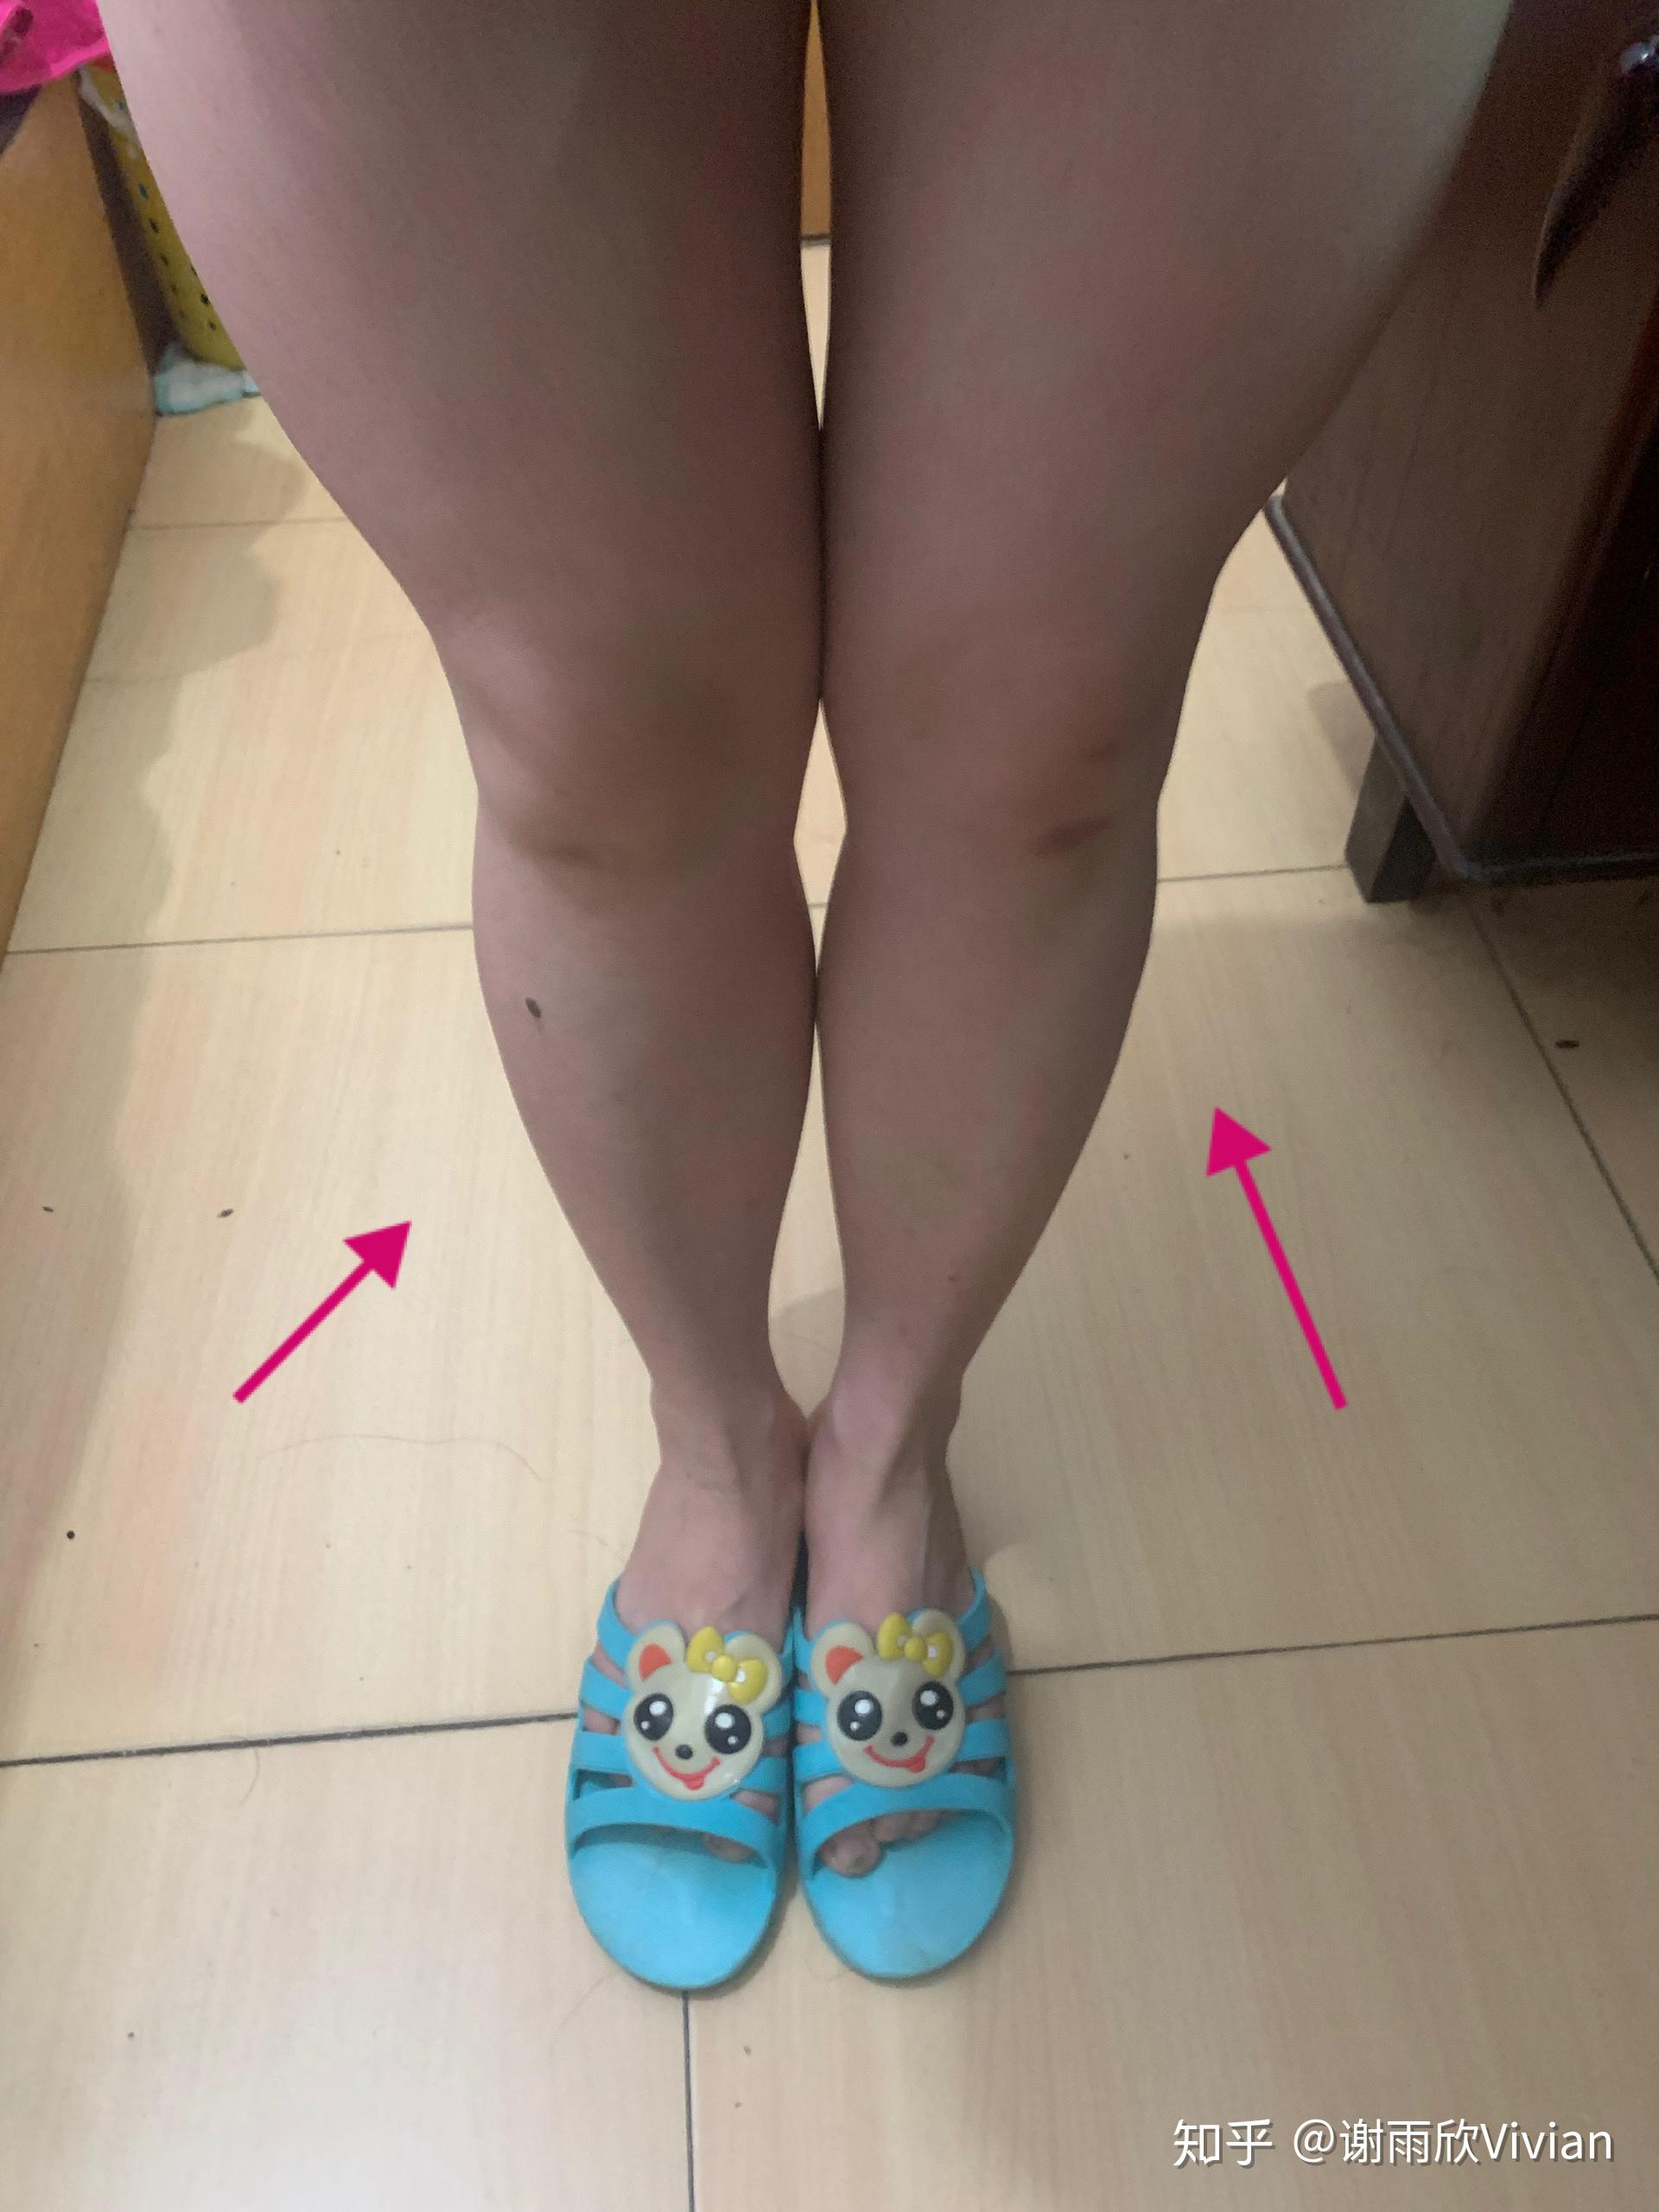 大脚趾中断下侧和脚后跟疼-乳腺癌康复圈--觅健